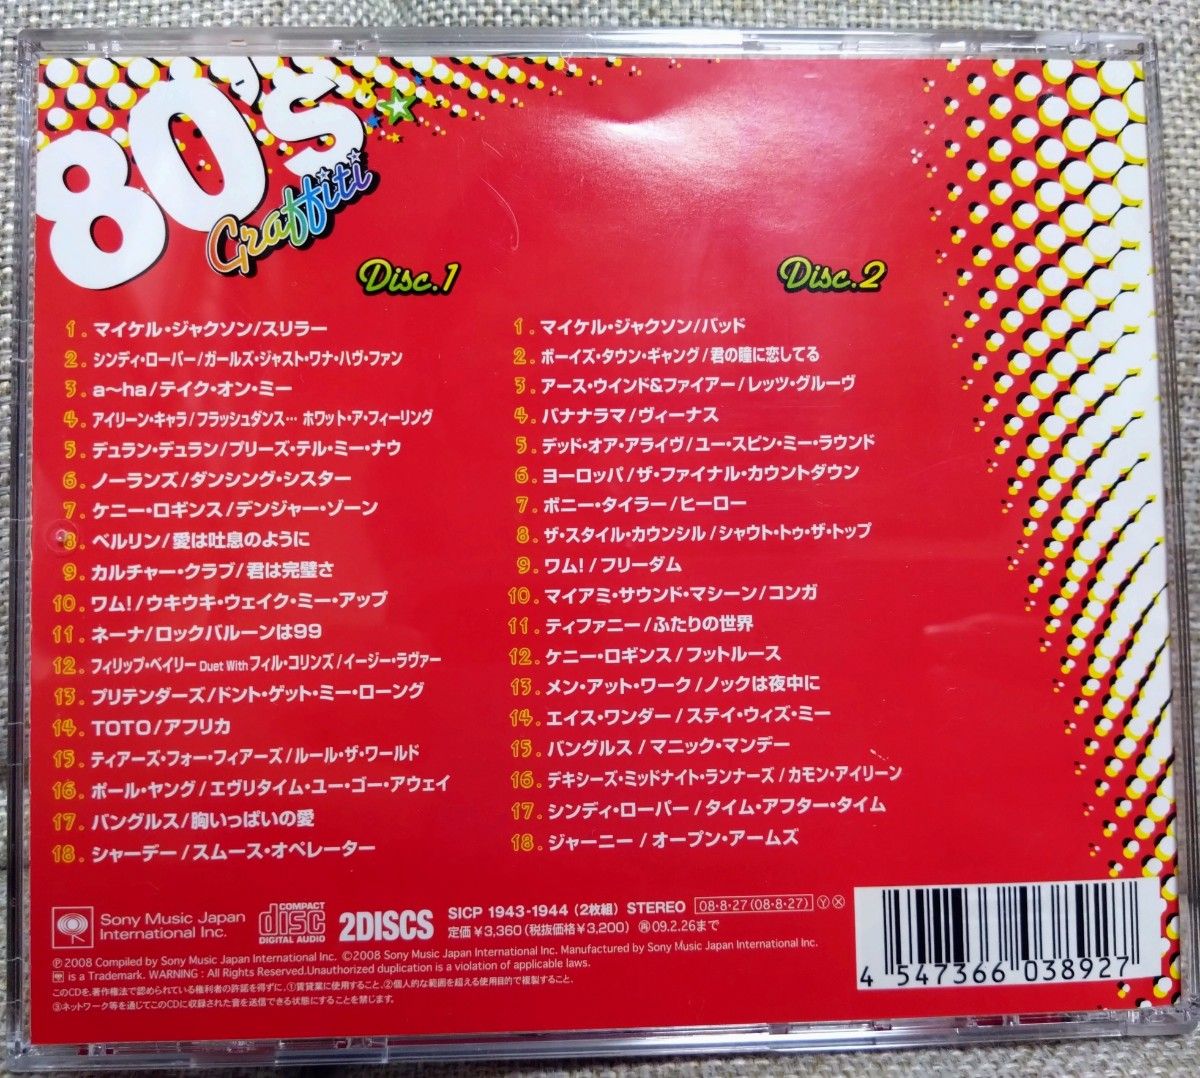 エイティーズ・グラフィティ CD 80's洋楽２枚組